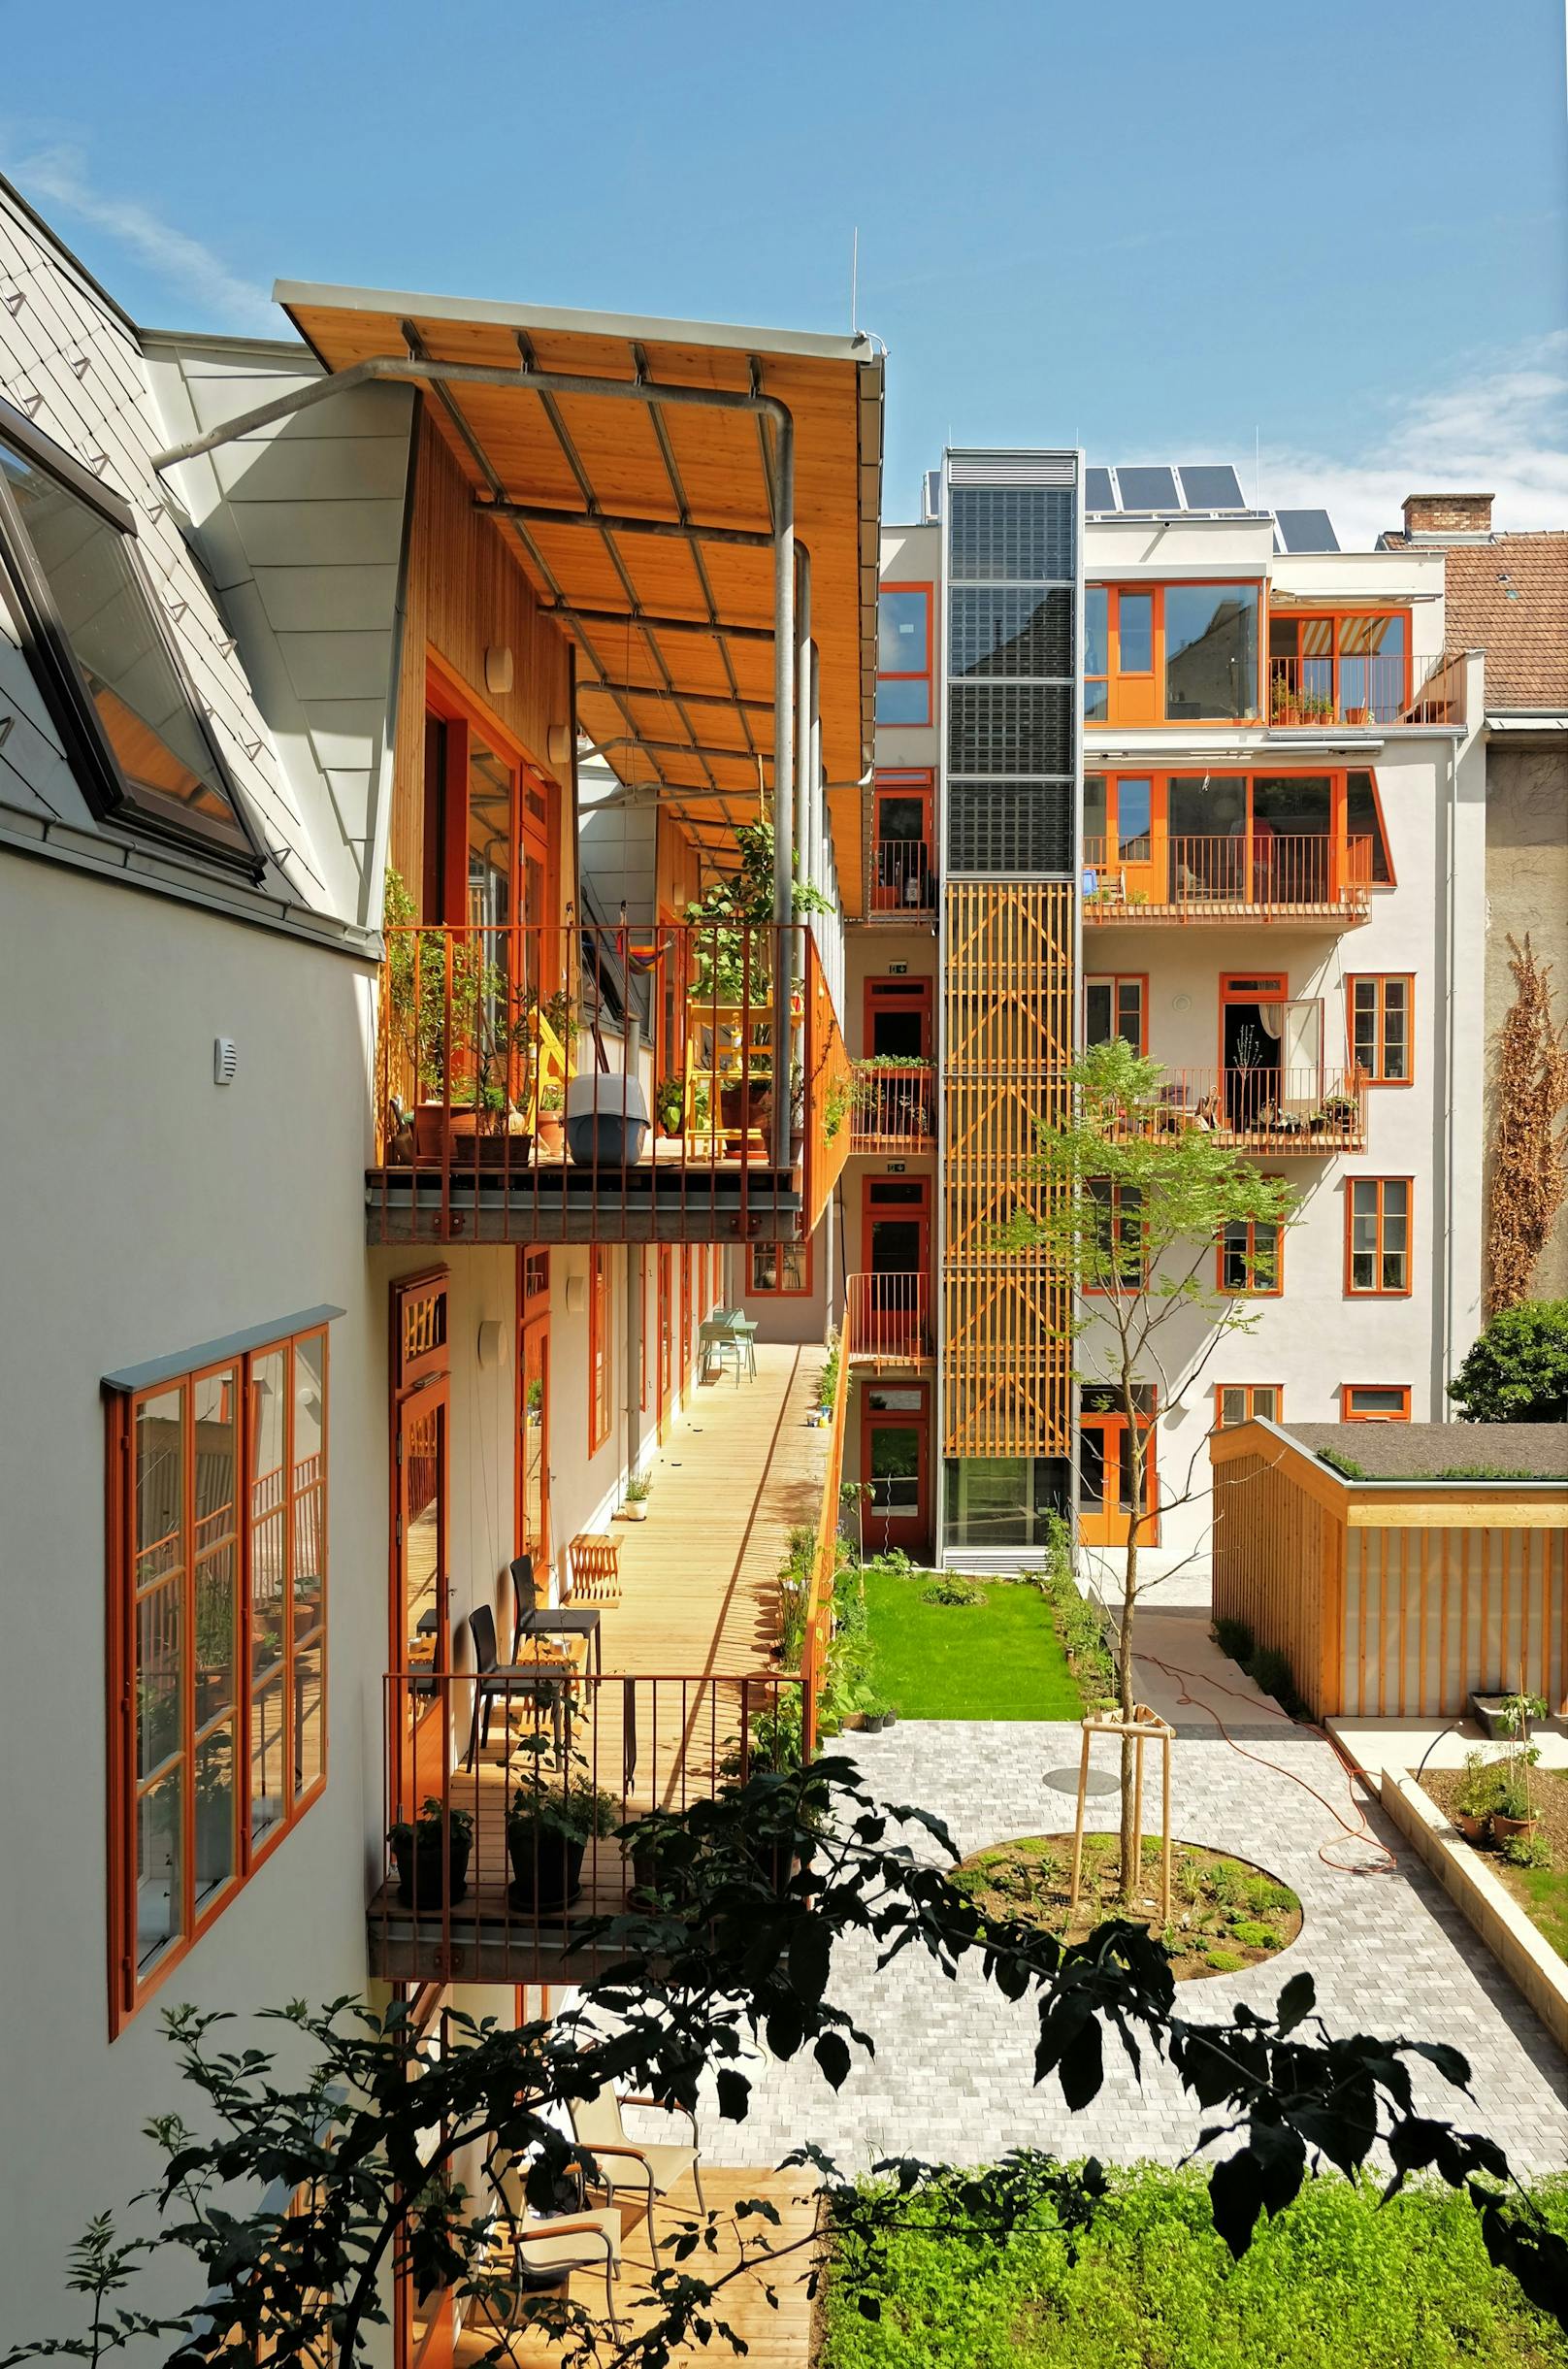 Vorzeigeprojekt mit Beschattung und viel Grün im Innenhof: Die Nutzung von Erdwärme macht dieses Wohnhaus im 17. Bezirk unabhängig von fossilen Energieträgern.